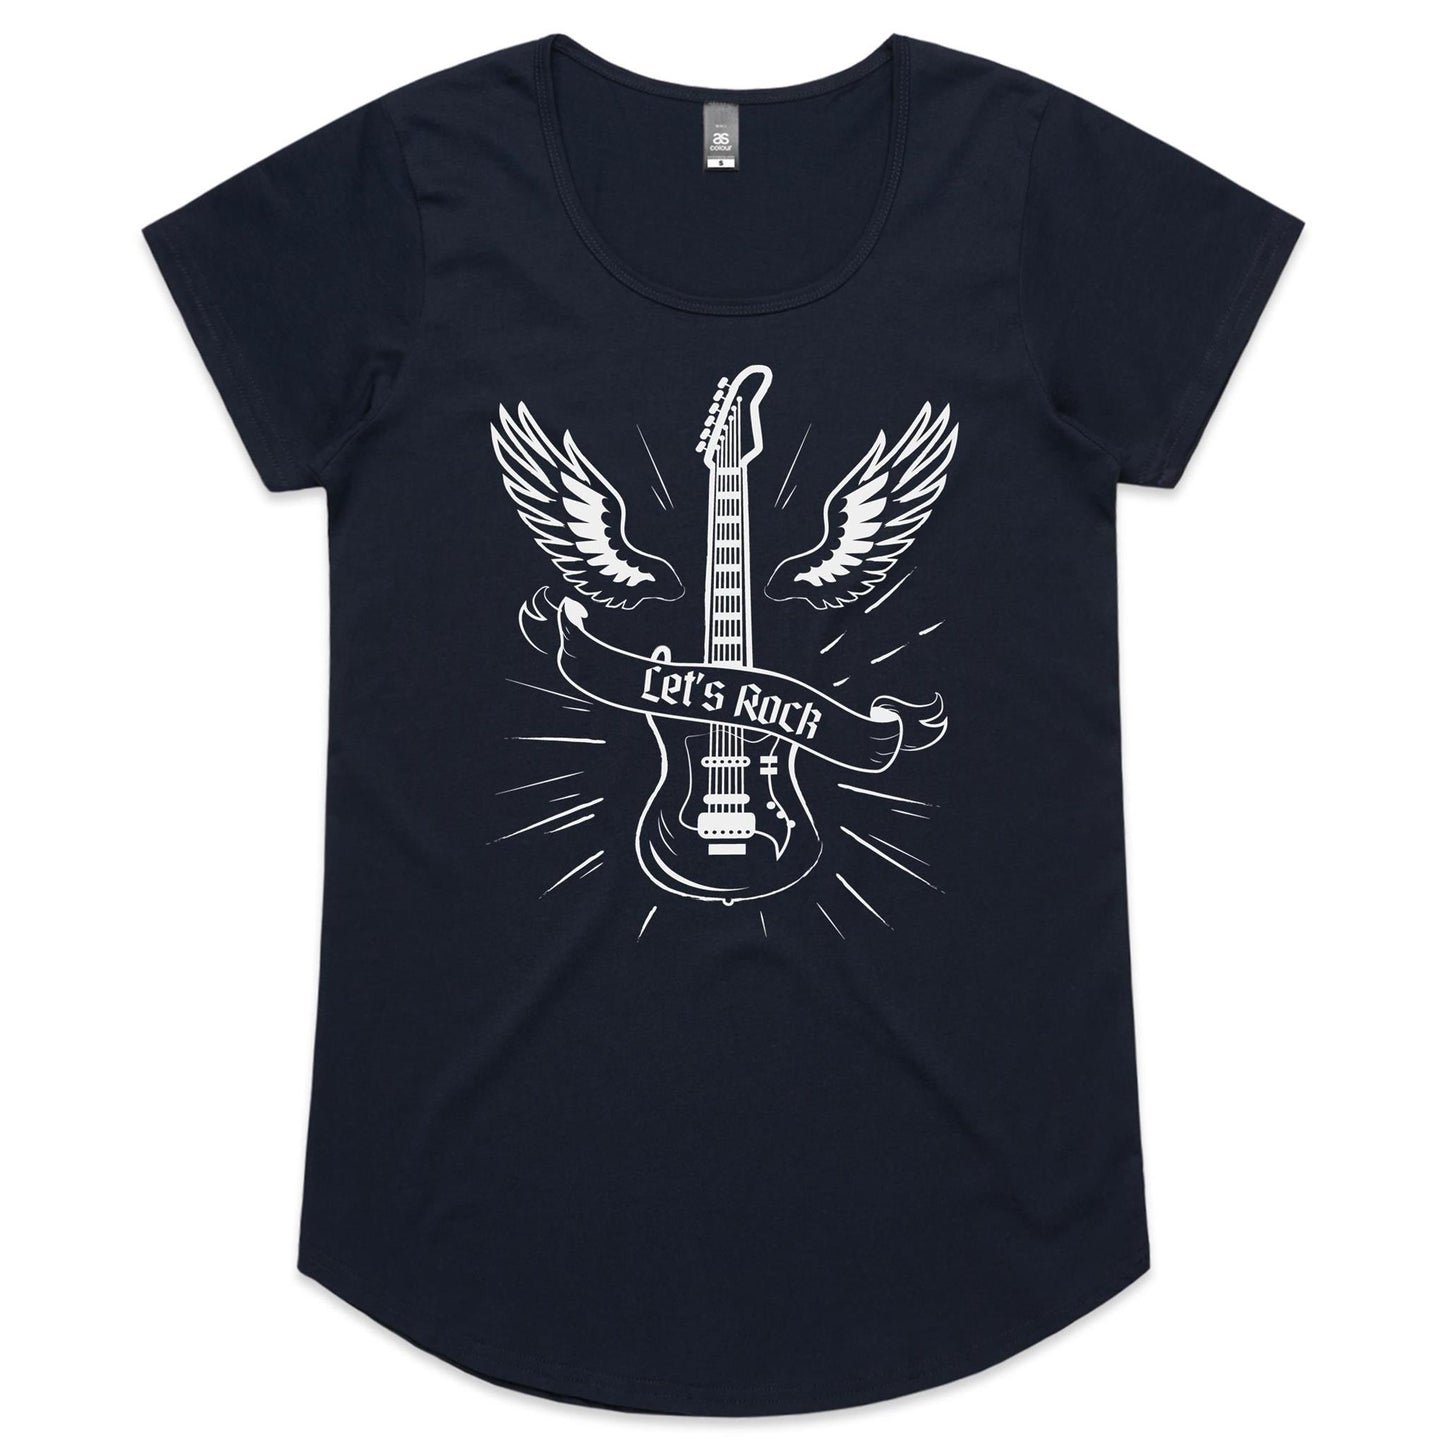 Let's Rock - Womens Scoop Neck T-Shirt Navy Womens Scoop Neck T-shirt Music